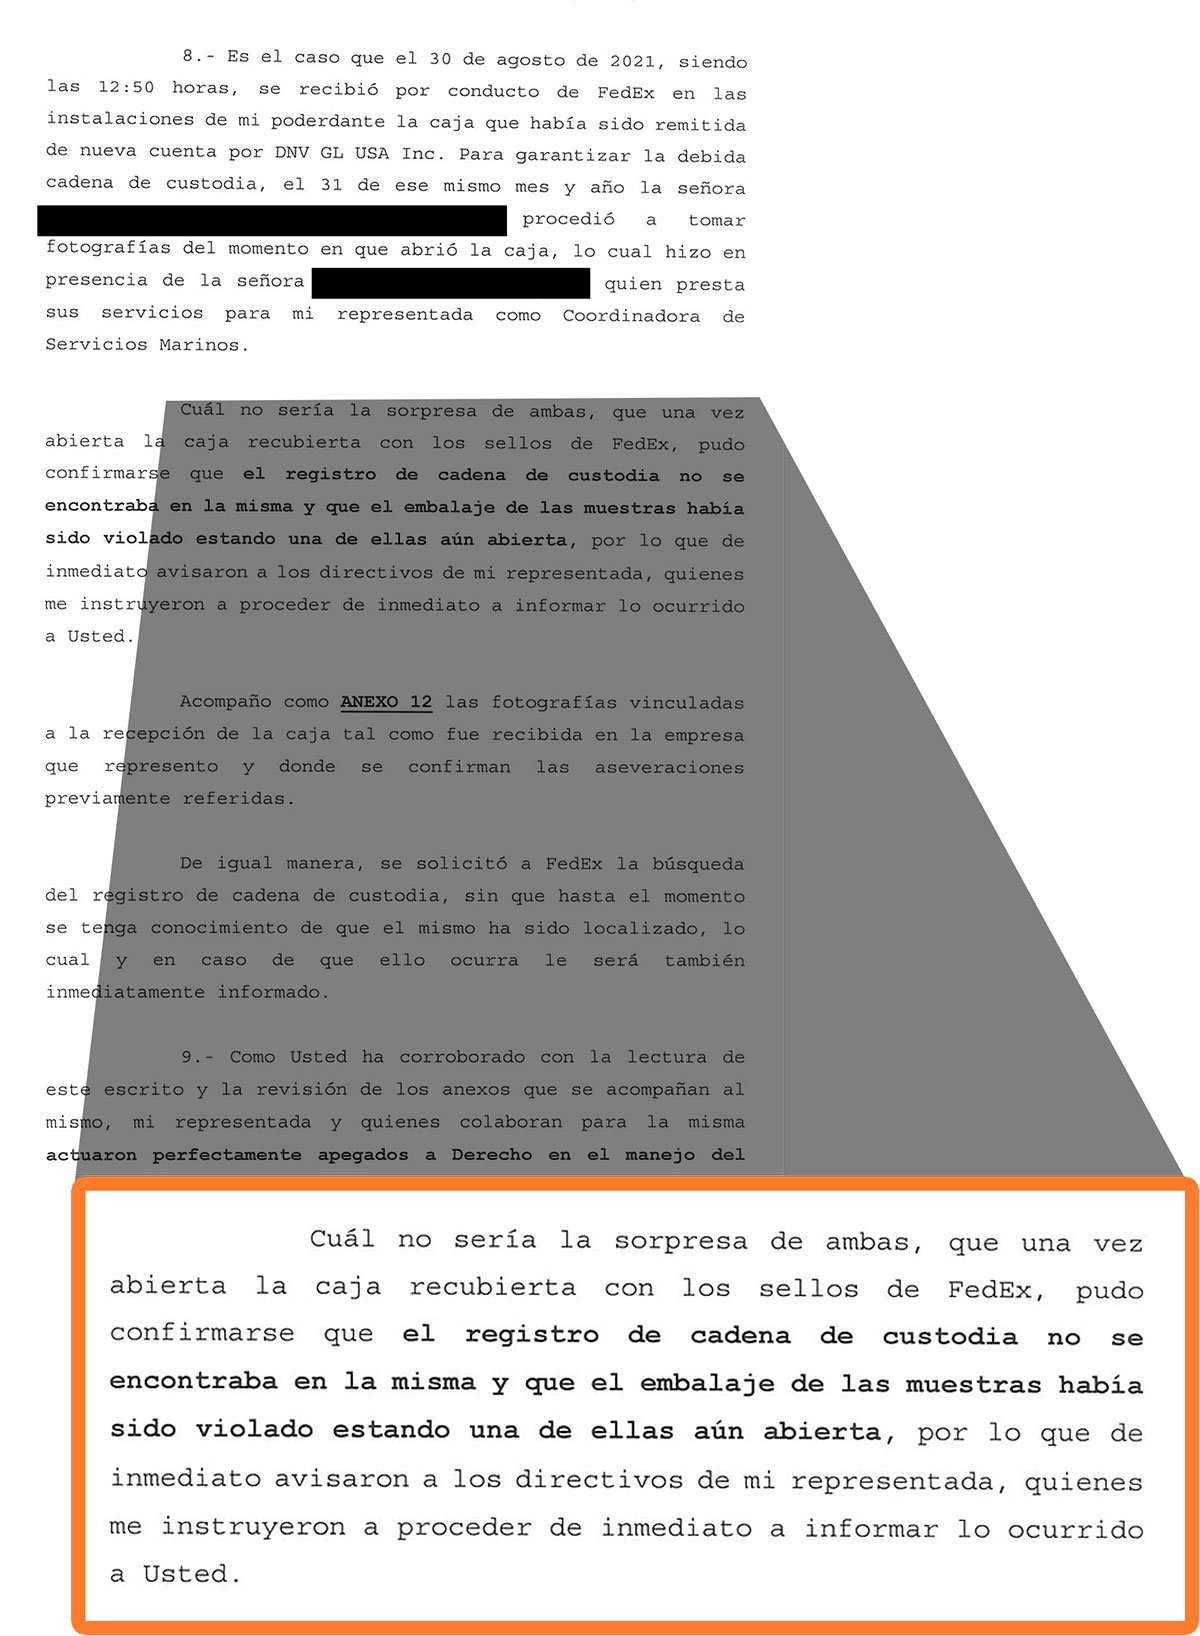 Fotografía: Extracto de la denuncia presentada por el representante legal de DNV, donde quedó asentada la desaparición de la cadena de custodia al abrir las cajas